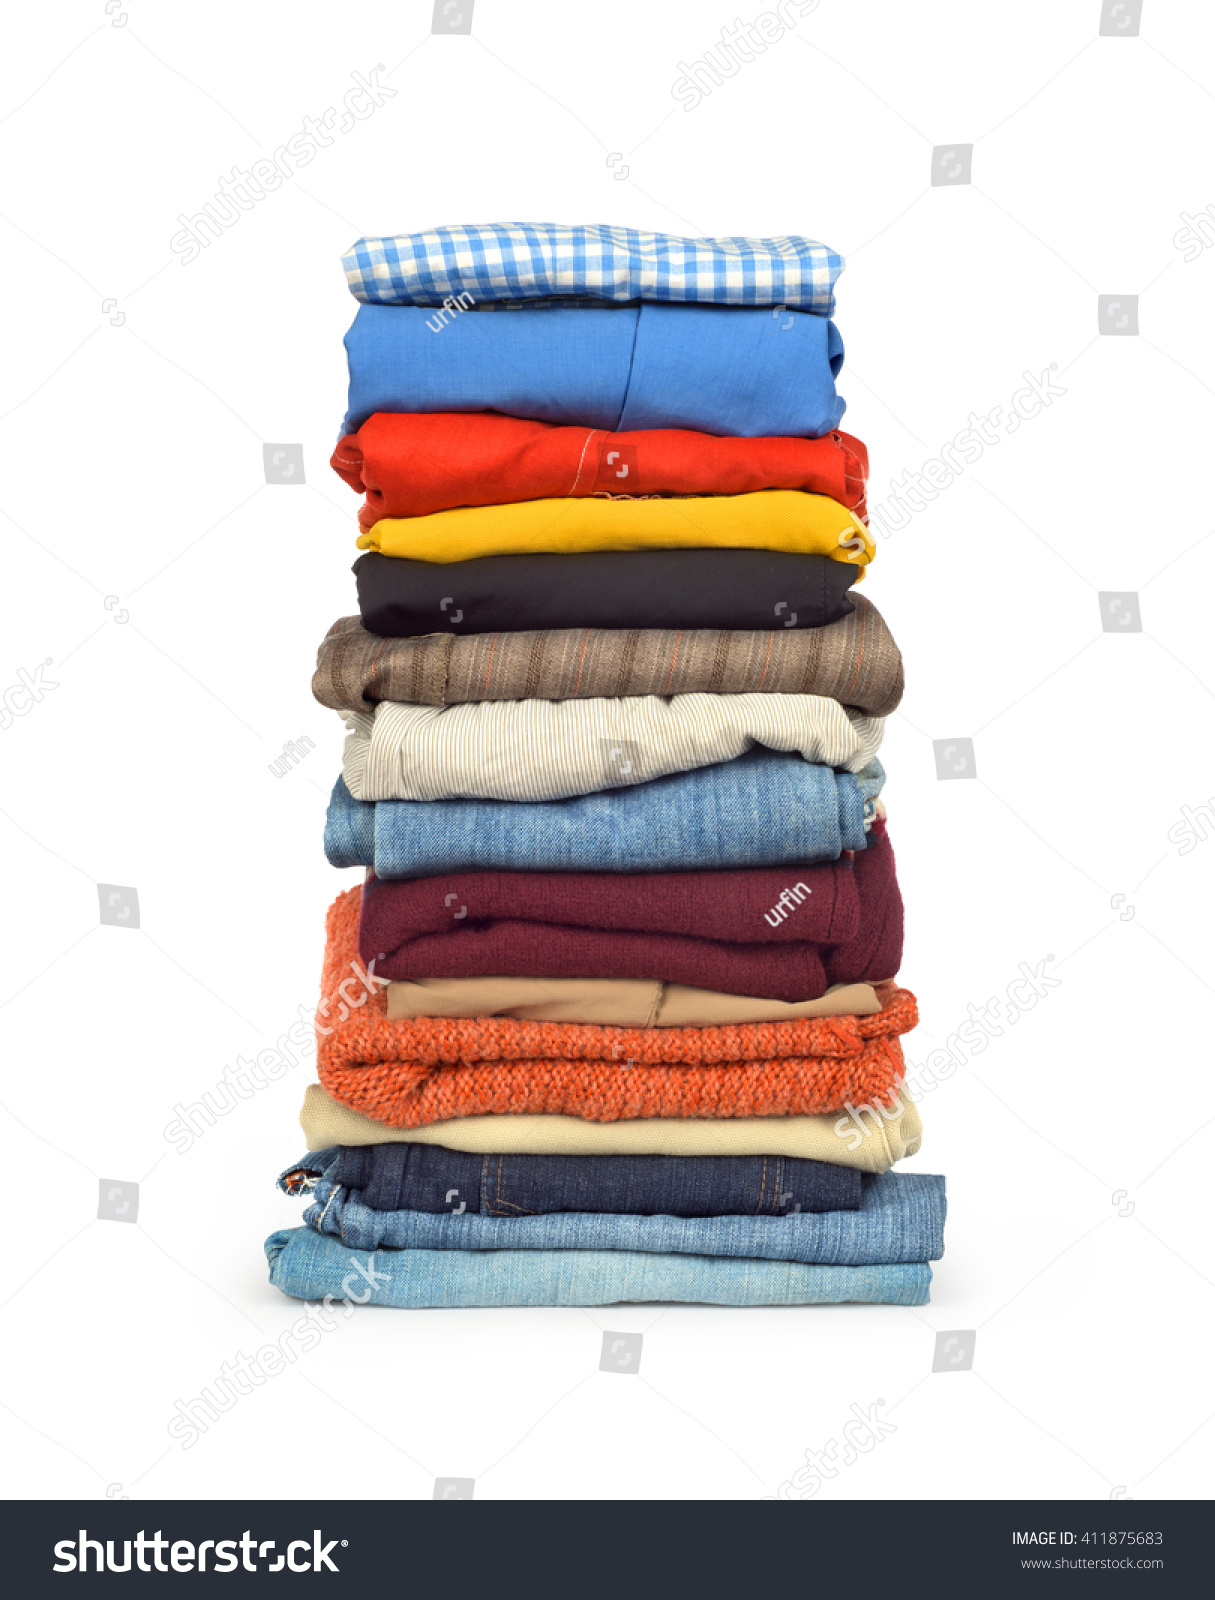 Family Laundry Pile Of Clothing Isolated Stock Photo 411875683 ...